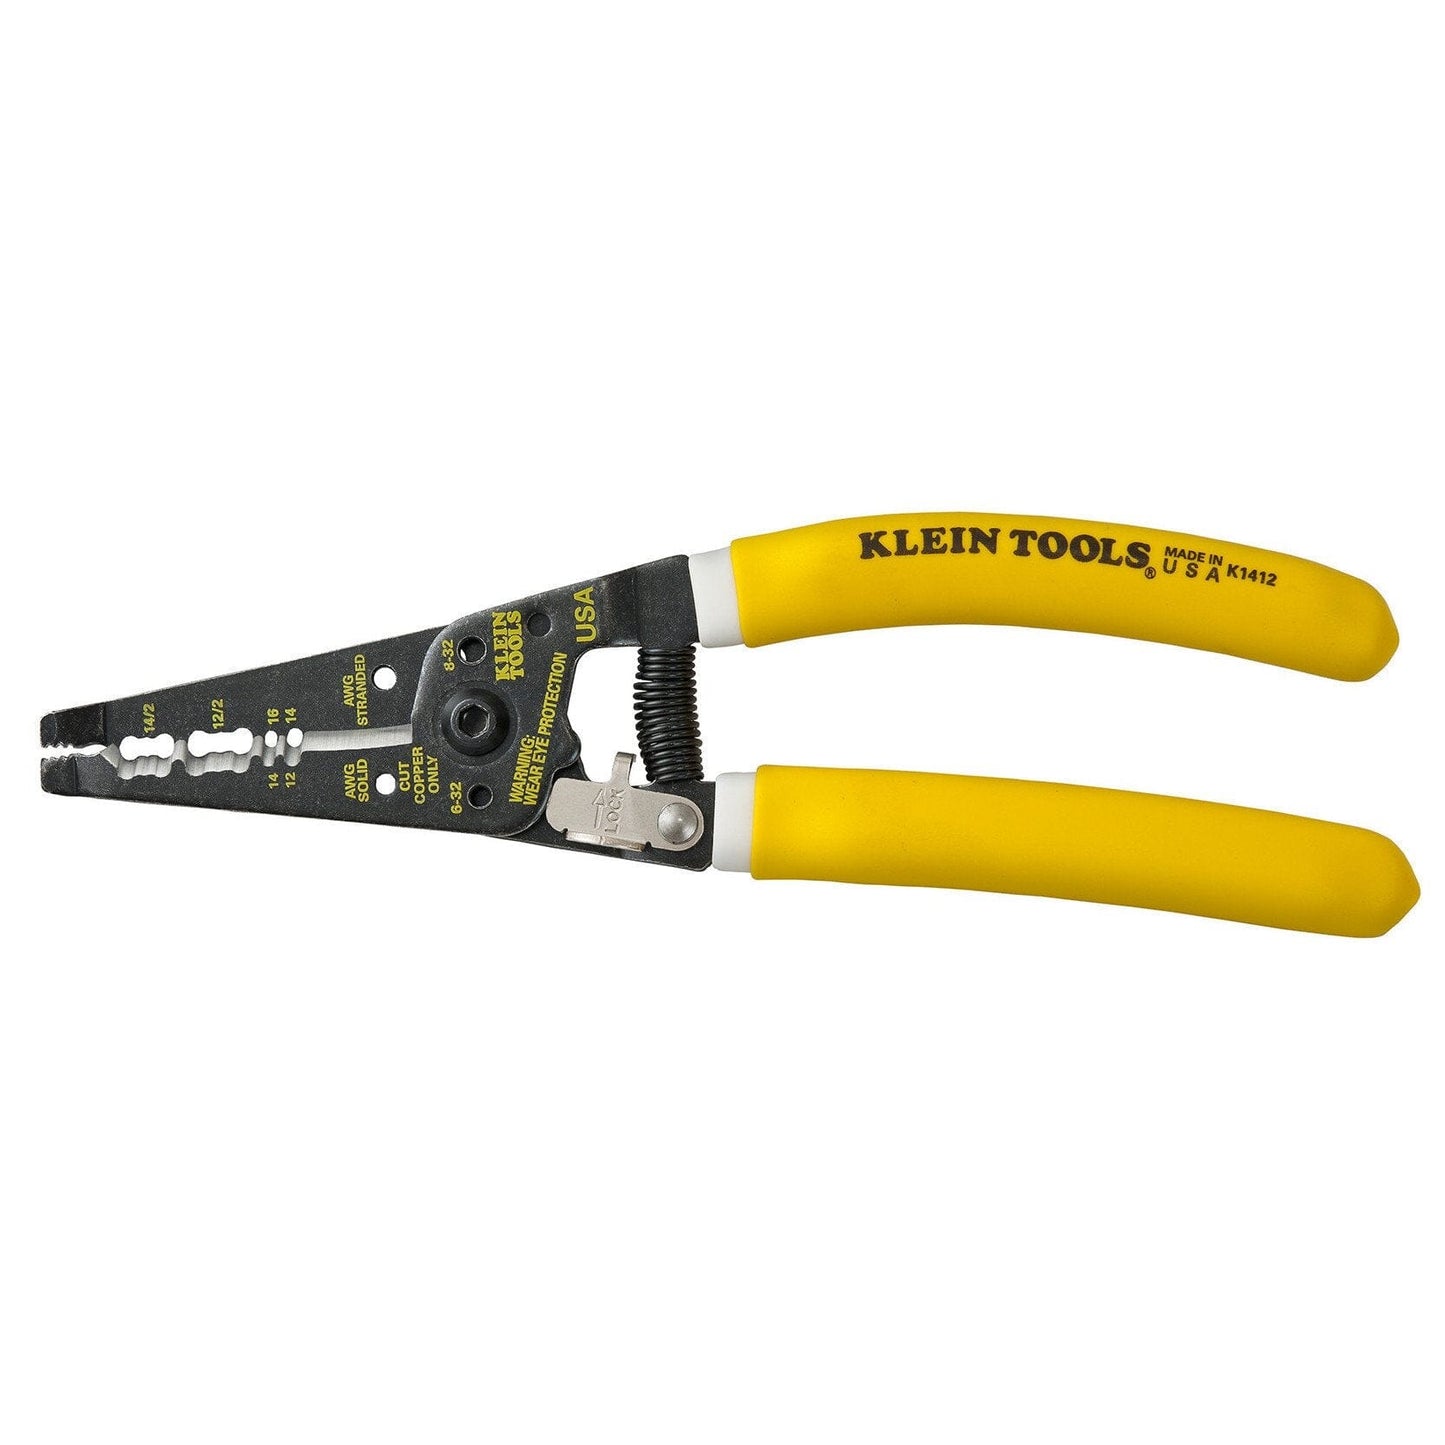 Klein Klein-Kurve® Dual NM Cable Stripper/Cutter - K1412 Underground Klein Tools 